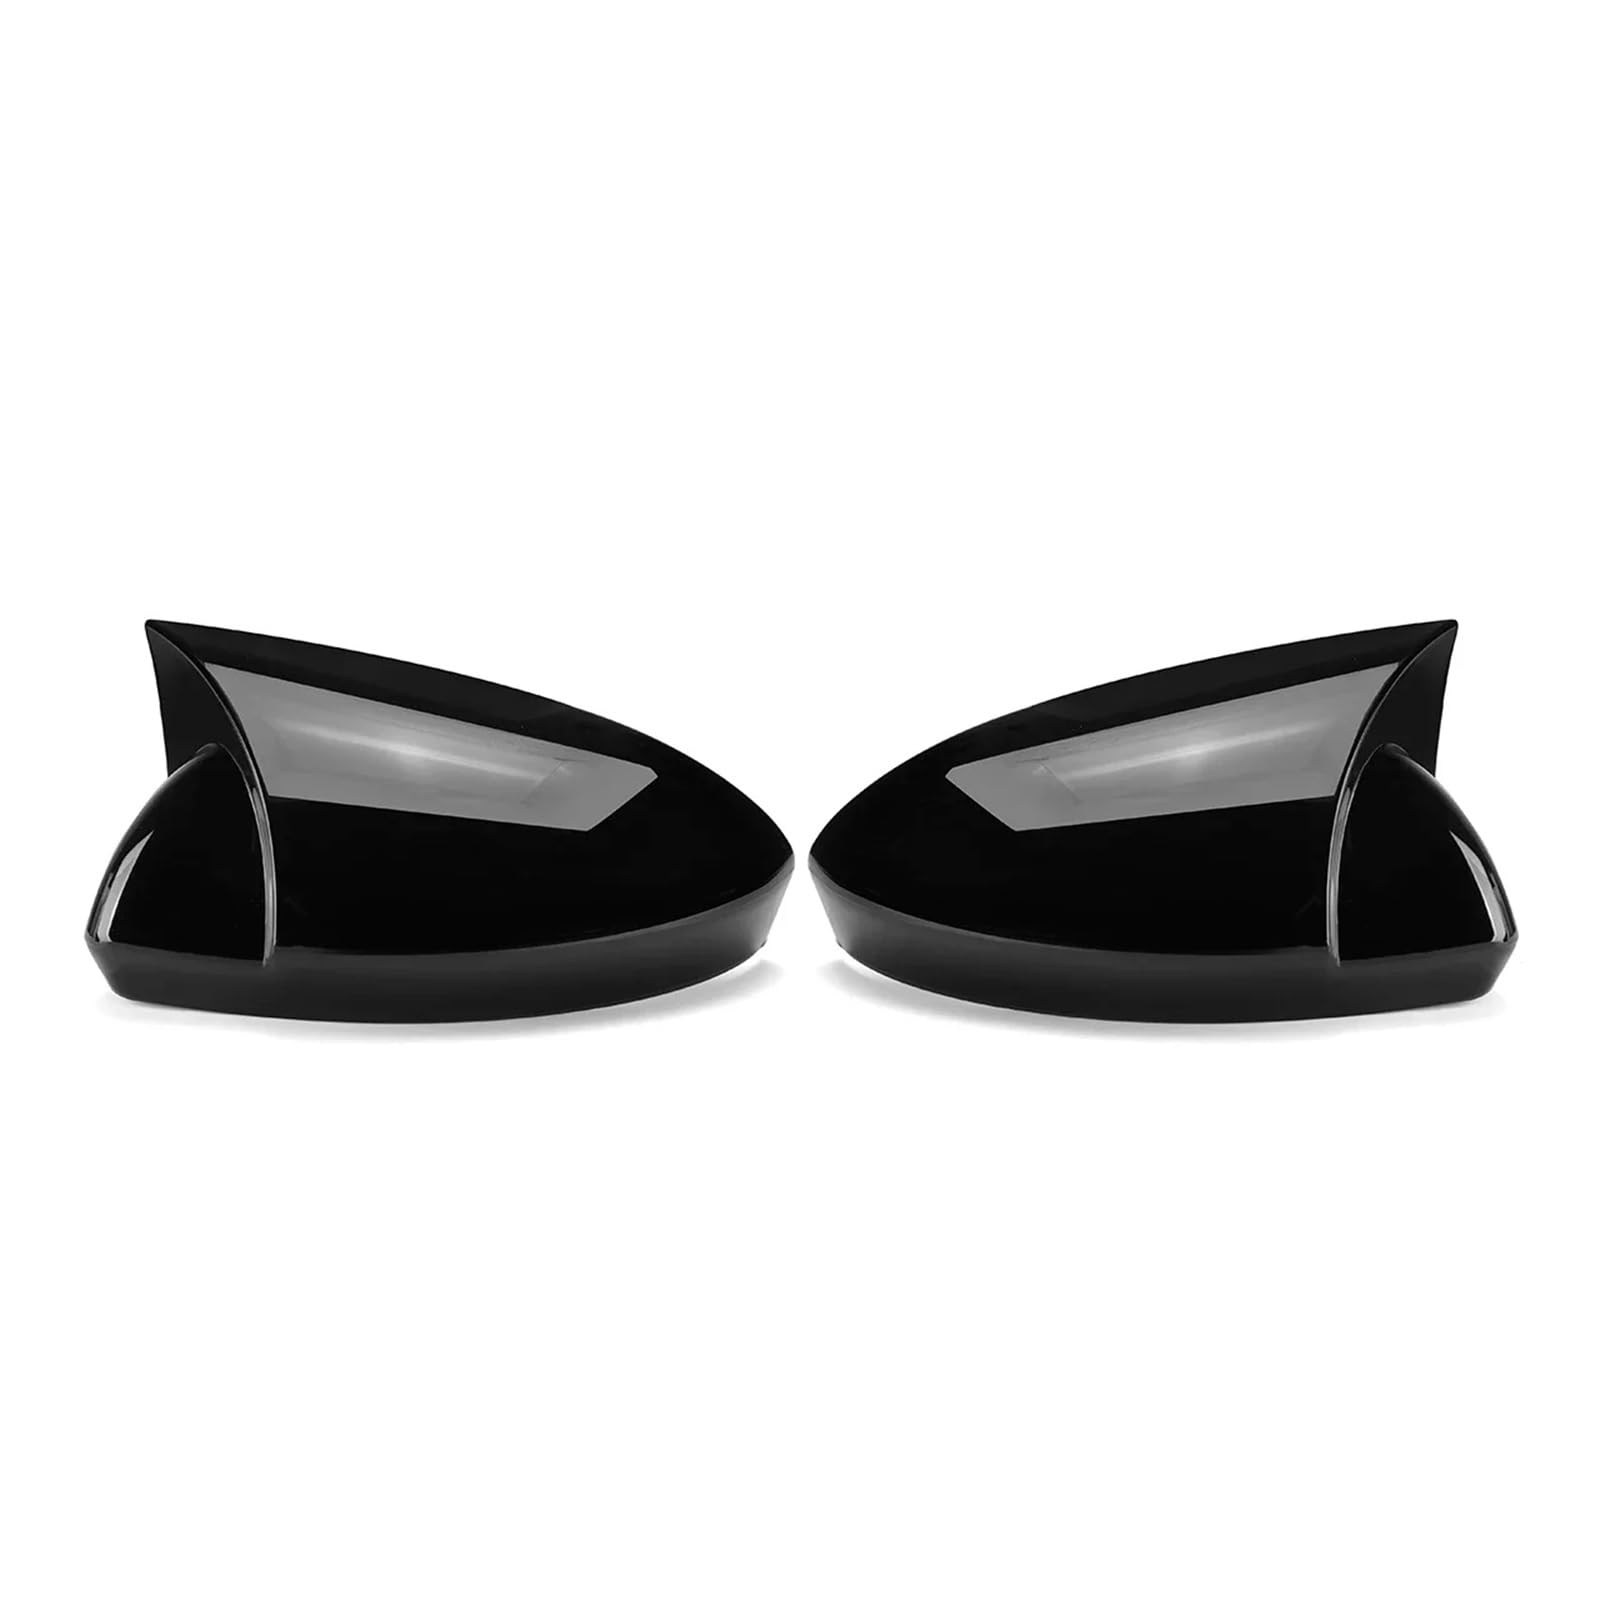 Rückspiegelkappe Für Megane 4 MK4 2016-2020 Rückspiegel Abdeckung Seite Flügel Spiegel Abdeckung Auto Zubehör Außenspiegelkappe(Glossy Black) von CUTEAS